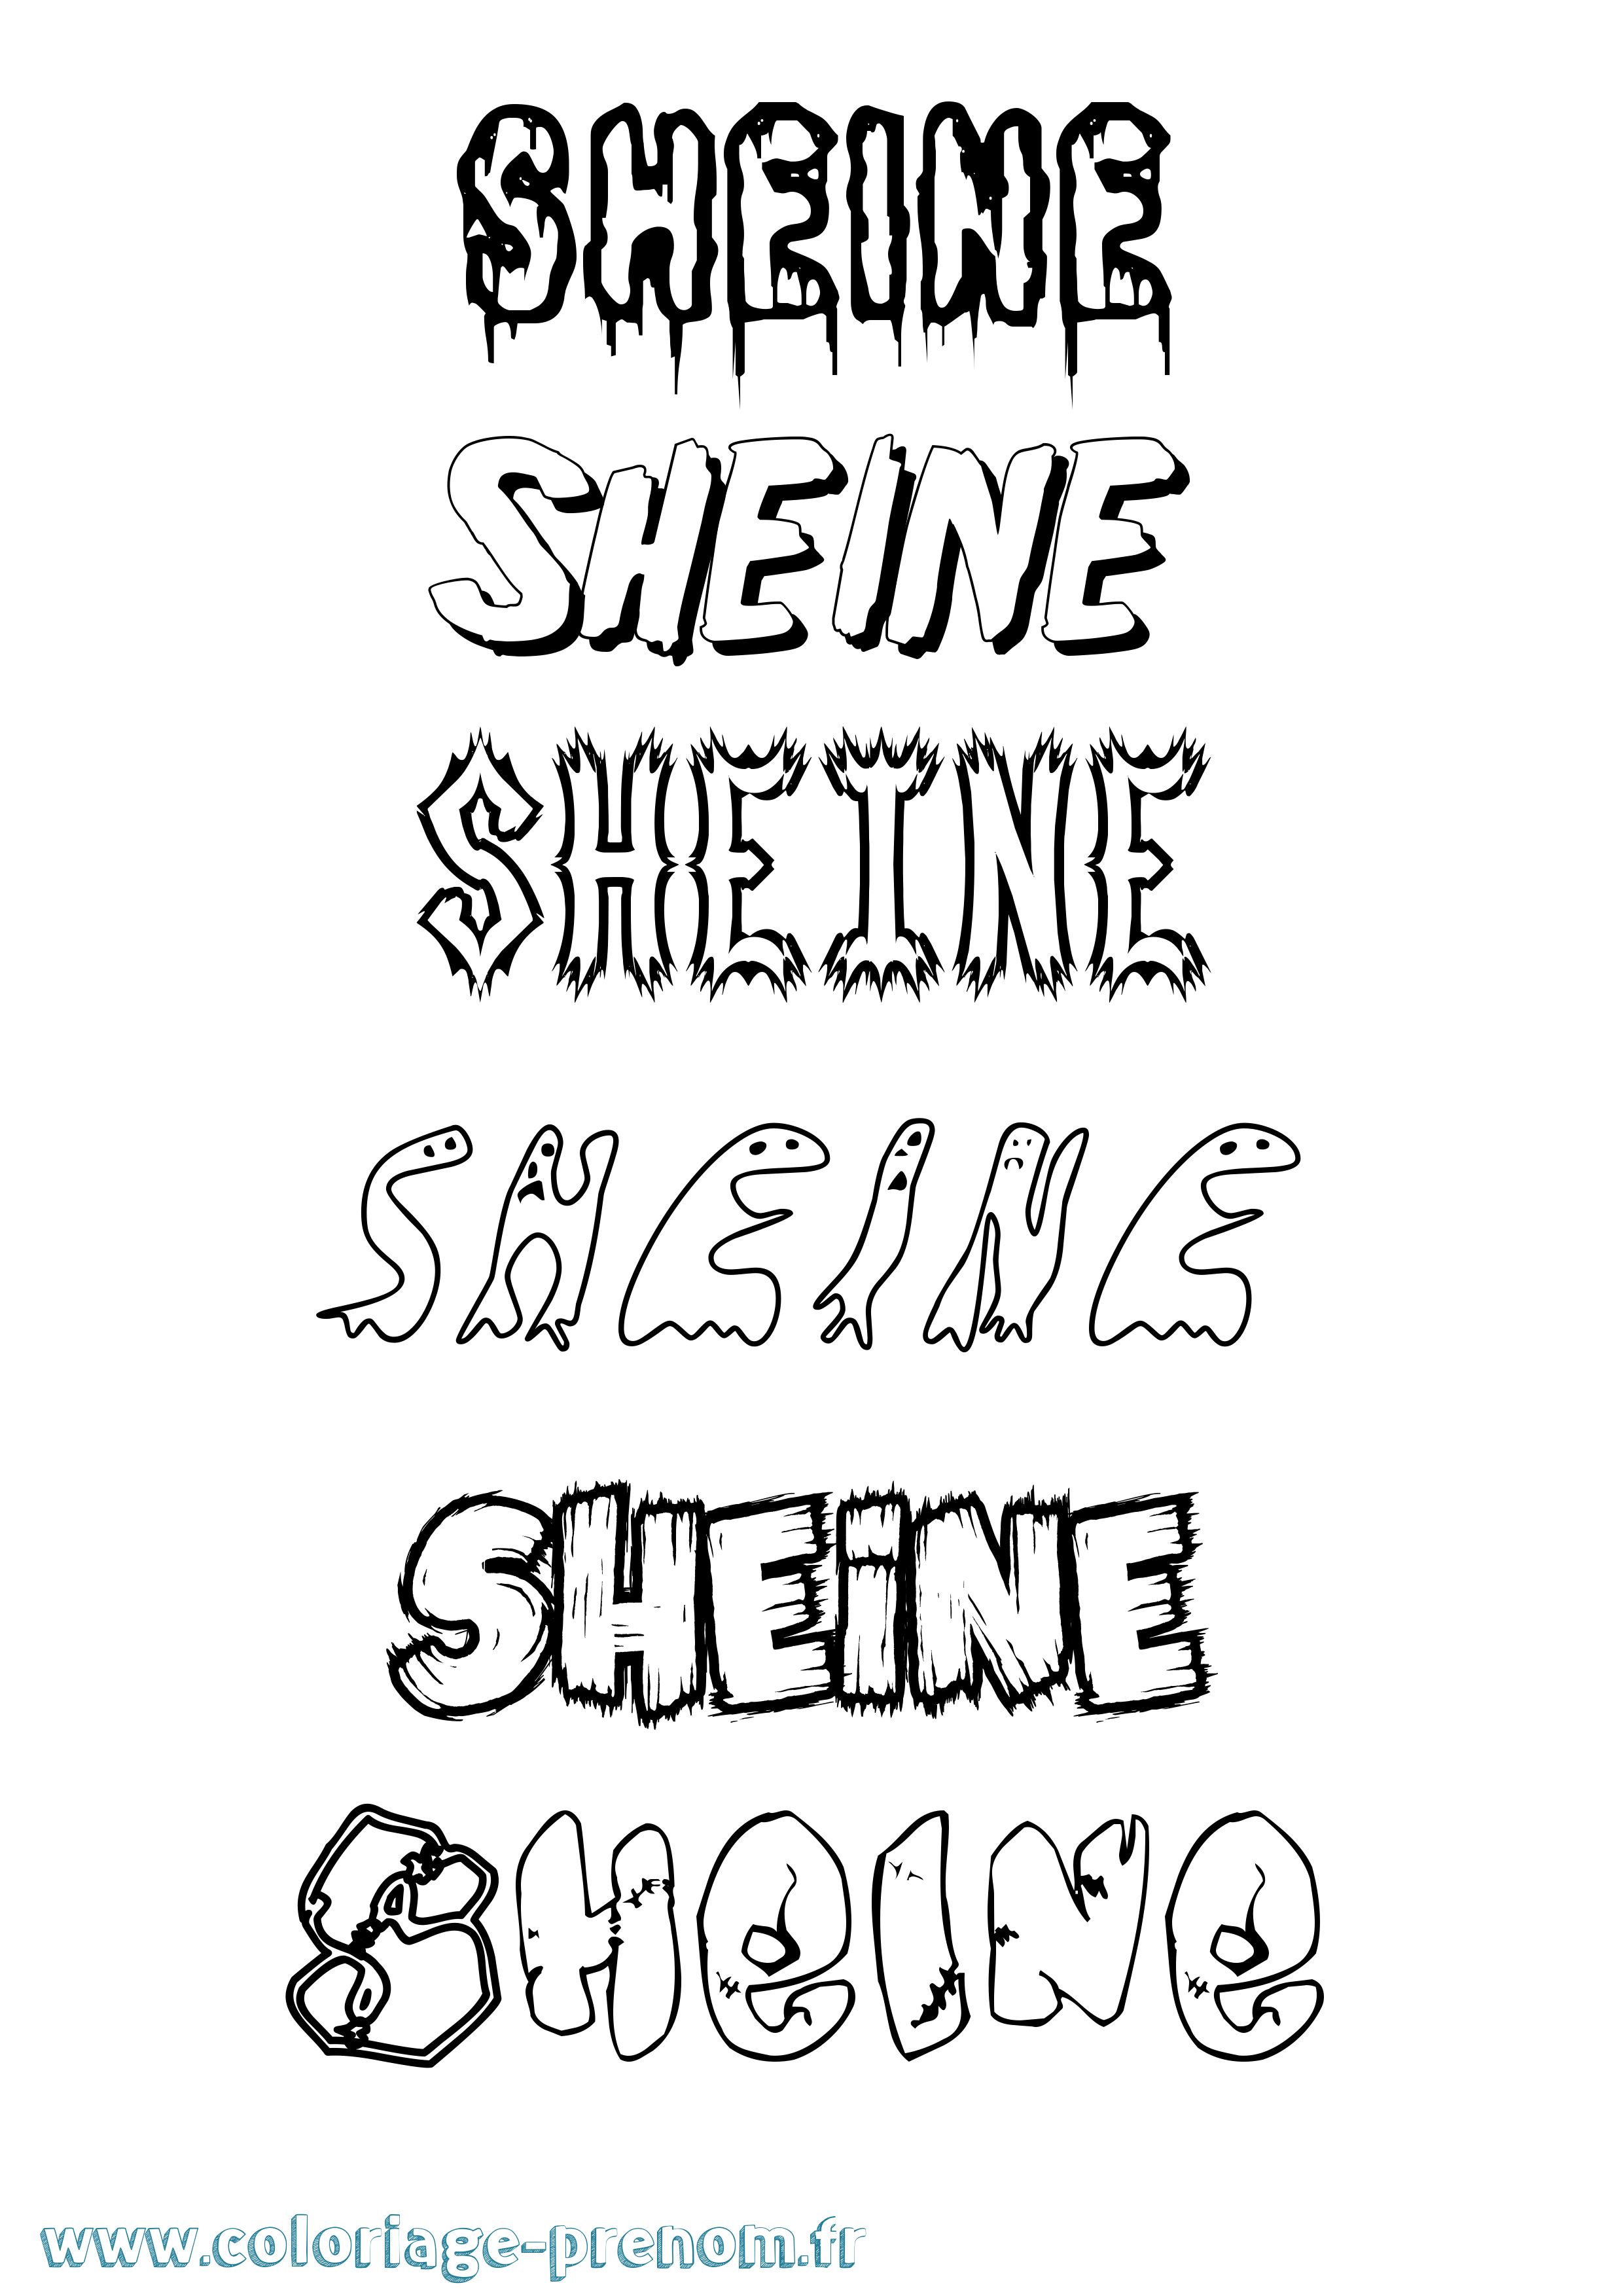 Coloriage prénom Sheine Frisson